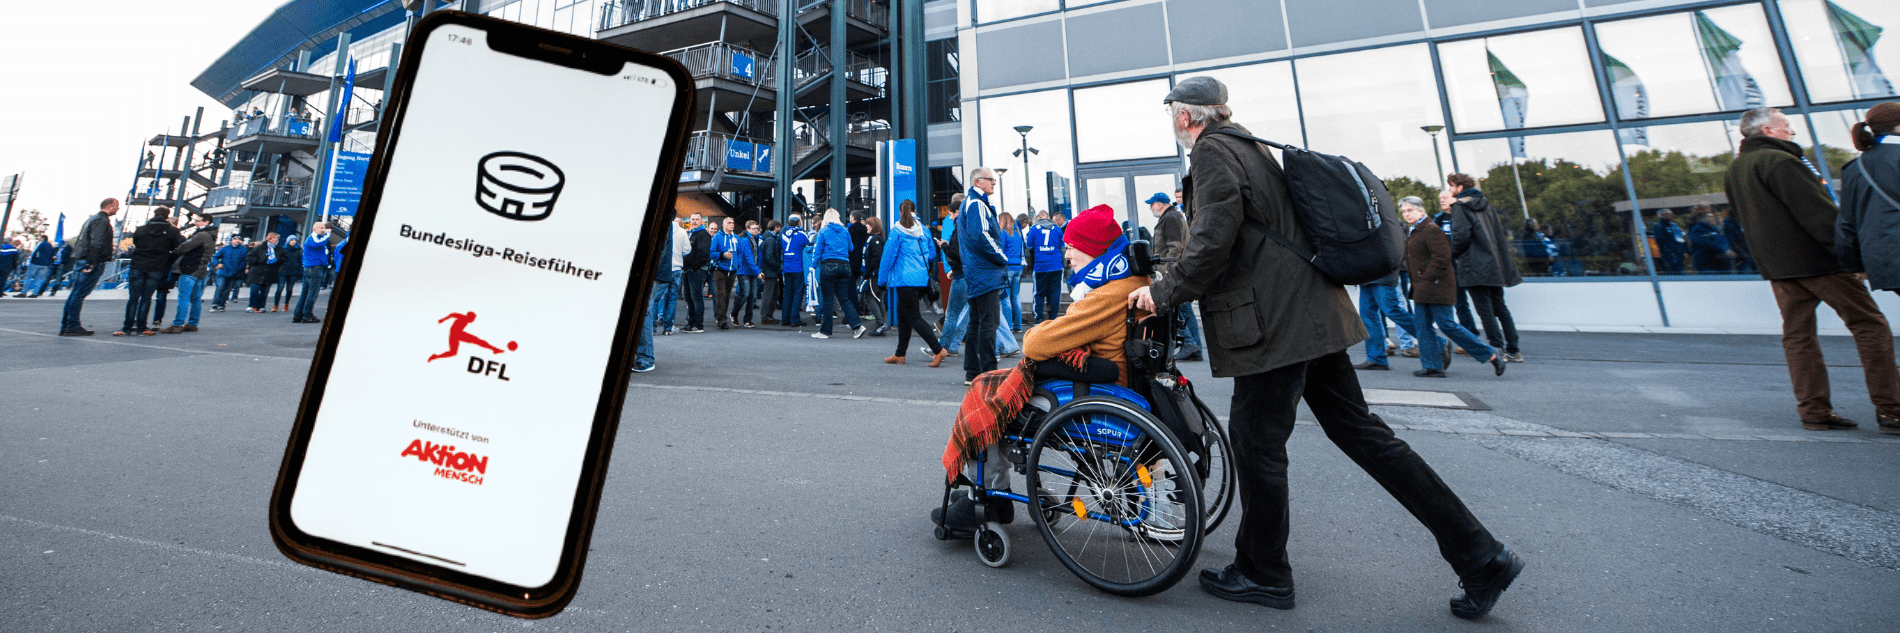 Ein Fan im Rollstuhl und eine Begleitperson im Umlauf eines Stadions. Davor ein Handy mit dem Startbildschirm der App mit Bundesliga-Reiseführer-Schriftzug und den Logos von DFL und Aktion Mensch.